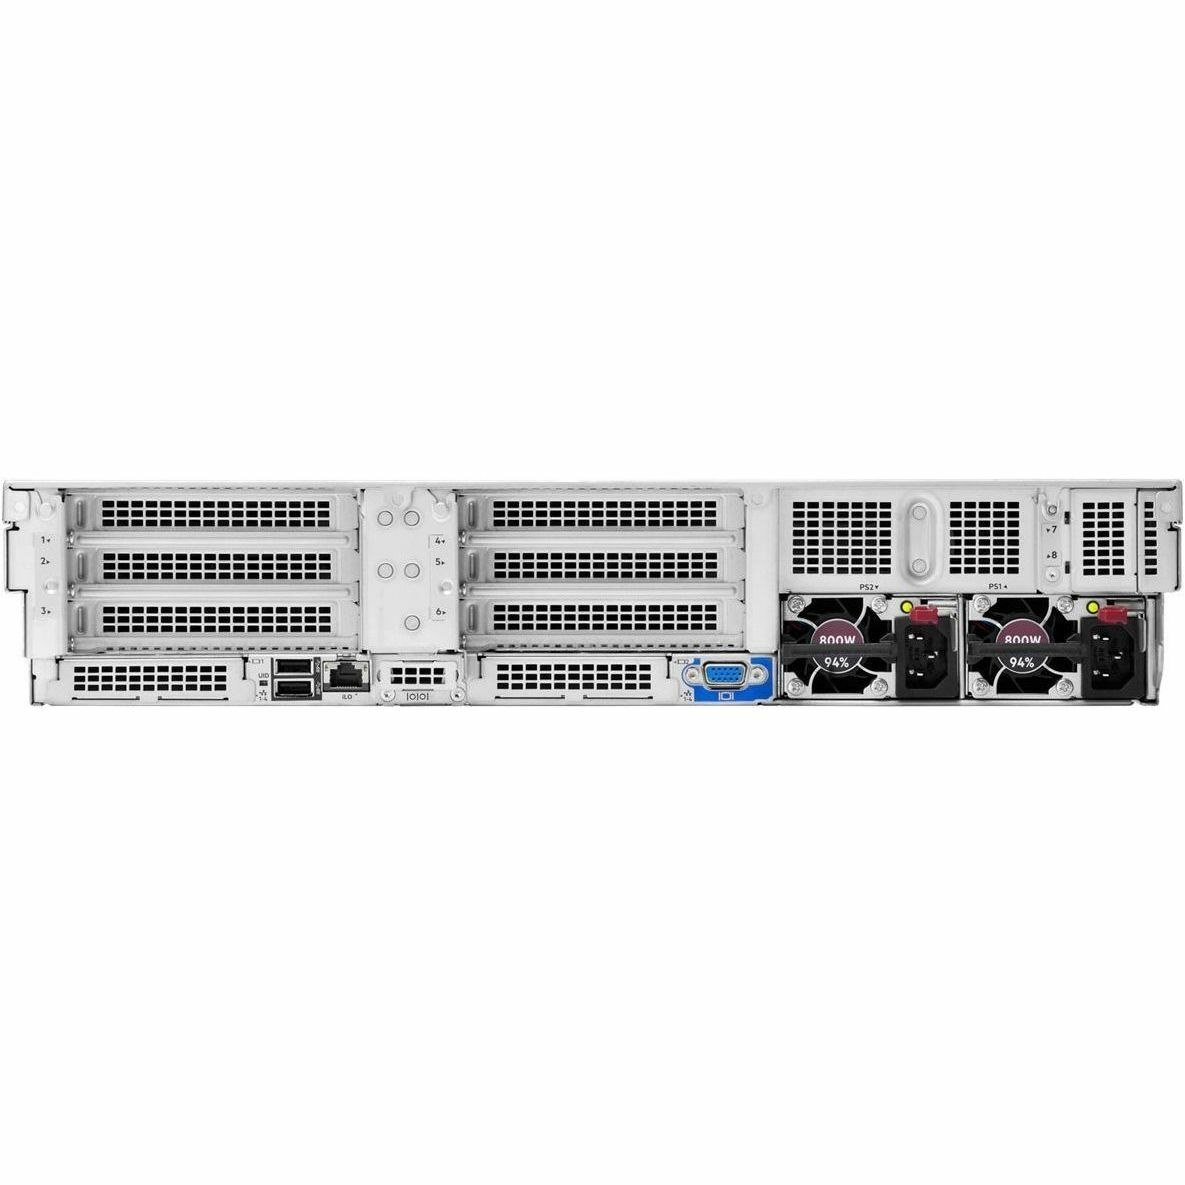 HPE ProLiant DL380 G11 2U Rack Server - 1 x Intel Xeon Silver 4416+ 2 GHz - 32 GB RAM - Serial ATA/600 Controller